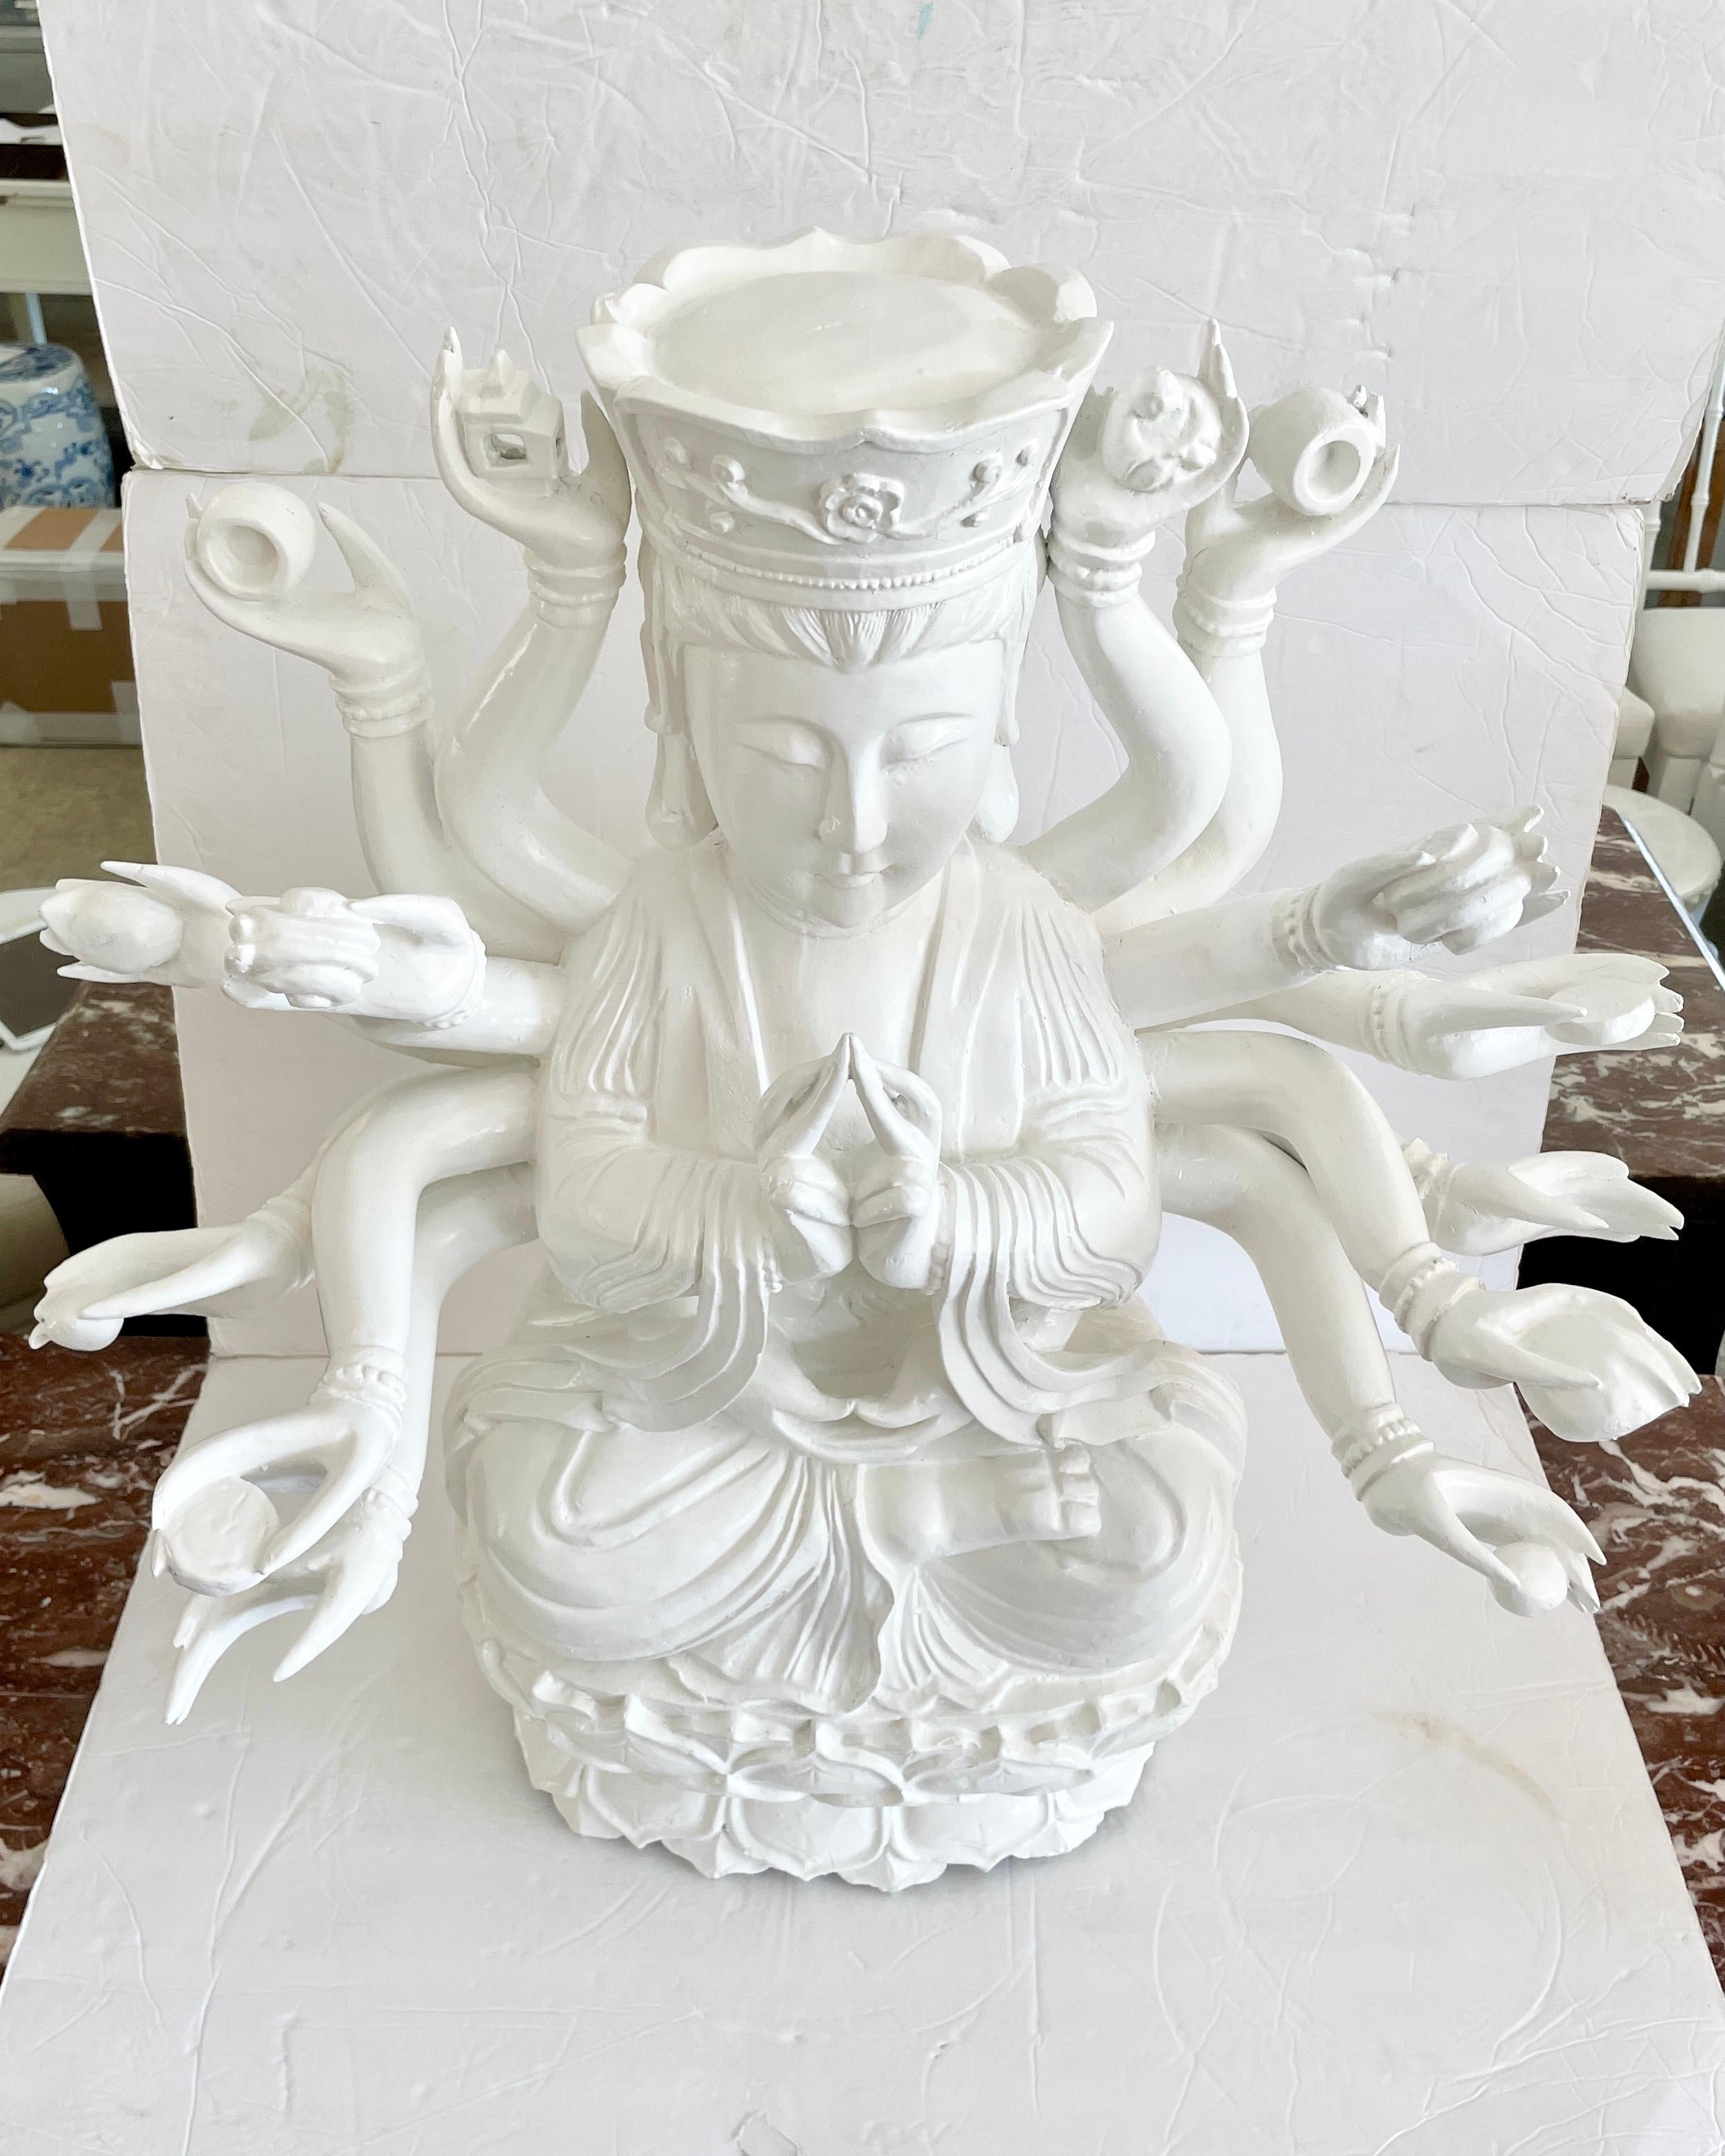 Magnifique statue en bois de la divinité tibétaine Avalokitesvara fraîchement laquée en blanc. Un excellent complément à votre décoration asiatique et à vos plateaux de table.